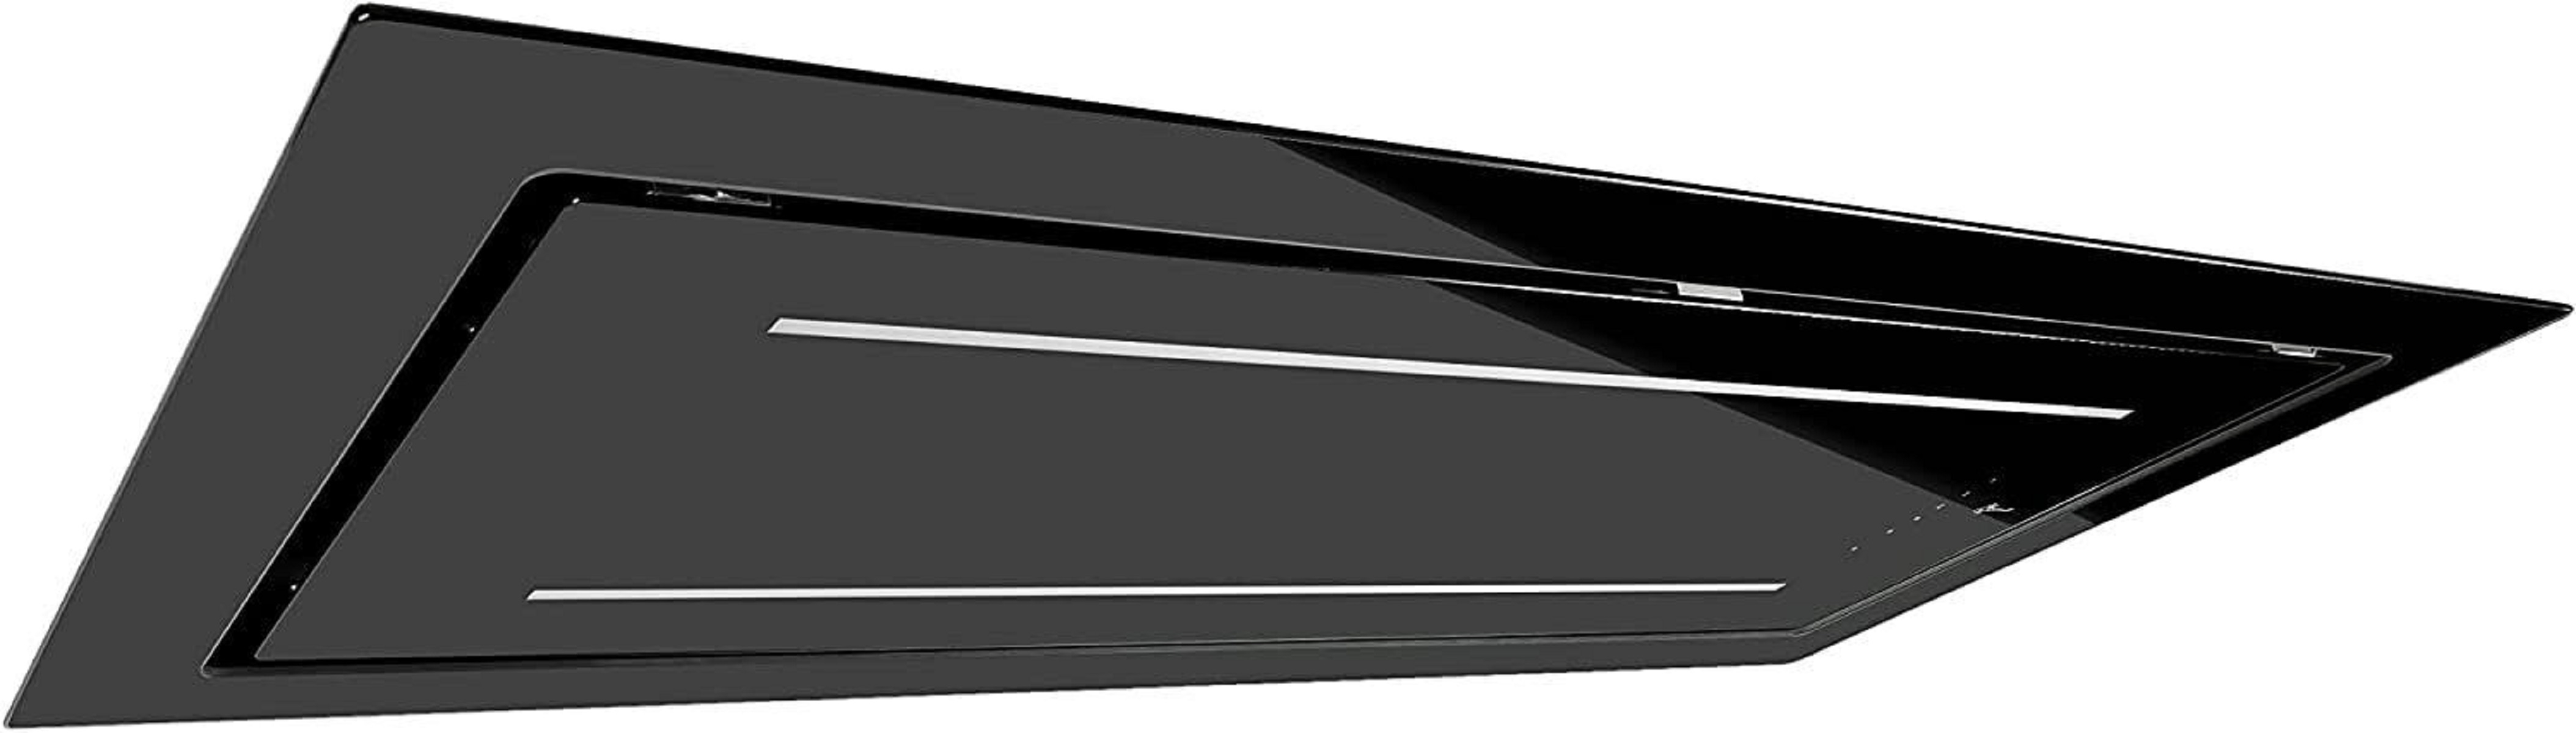 Schwarz, BL mm C 385 120 cm mm (1200 341 Deckenhaube 120 GURARI GCH breit, tief) Deckenhaube